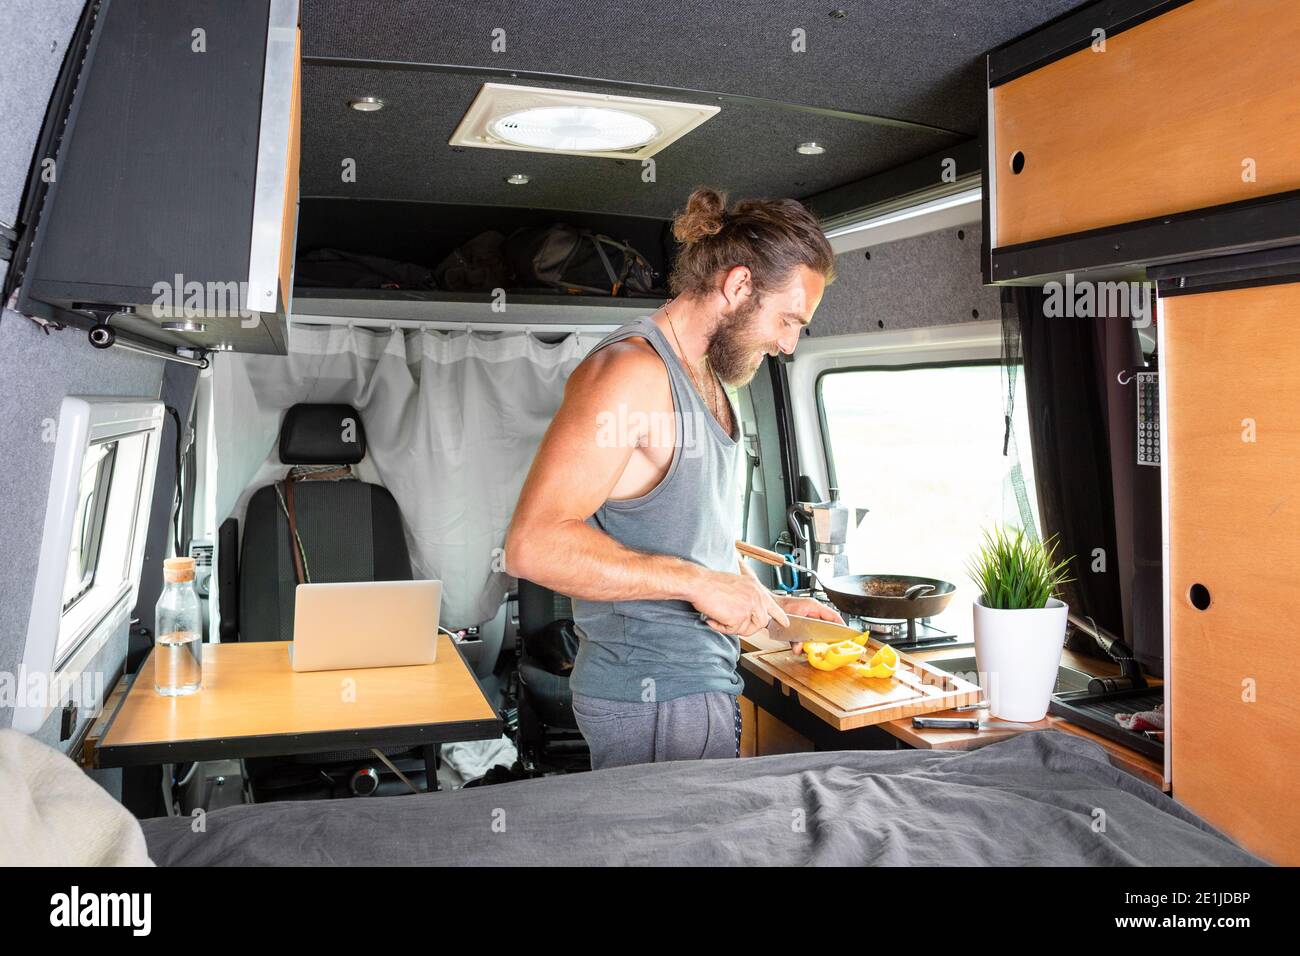 Joven preparando comida dentro de su caravana Foto de stock